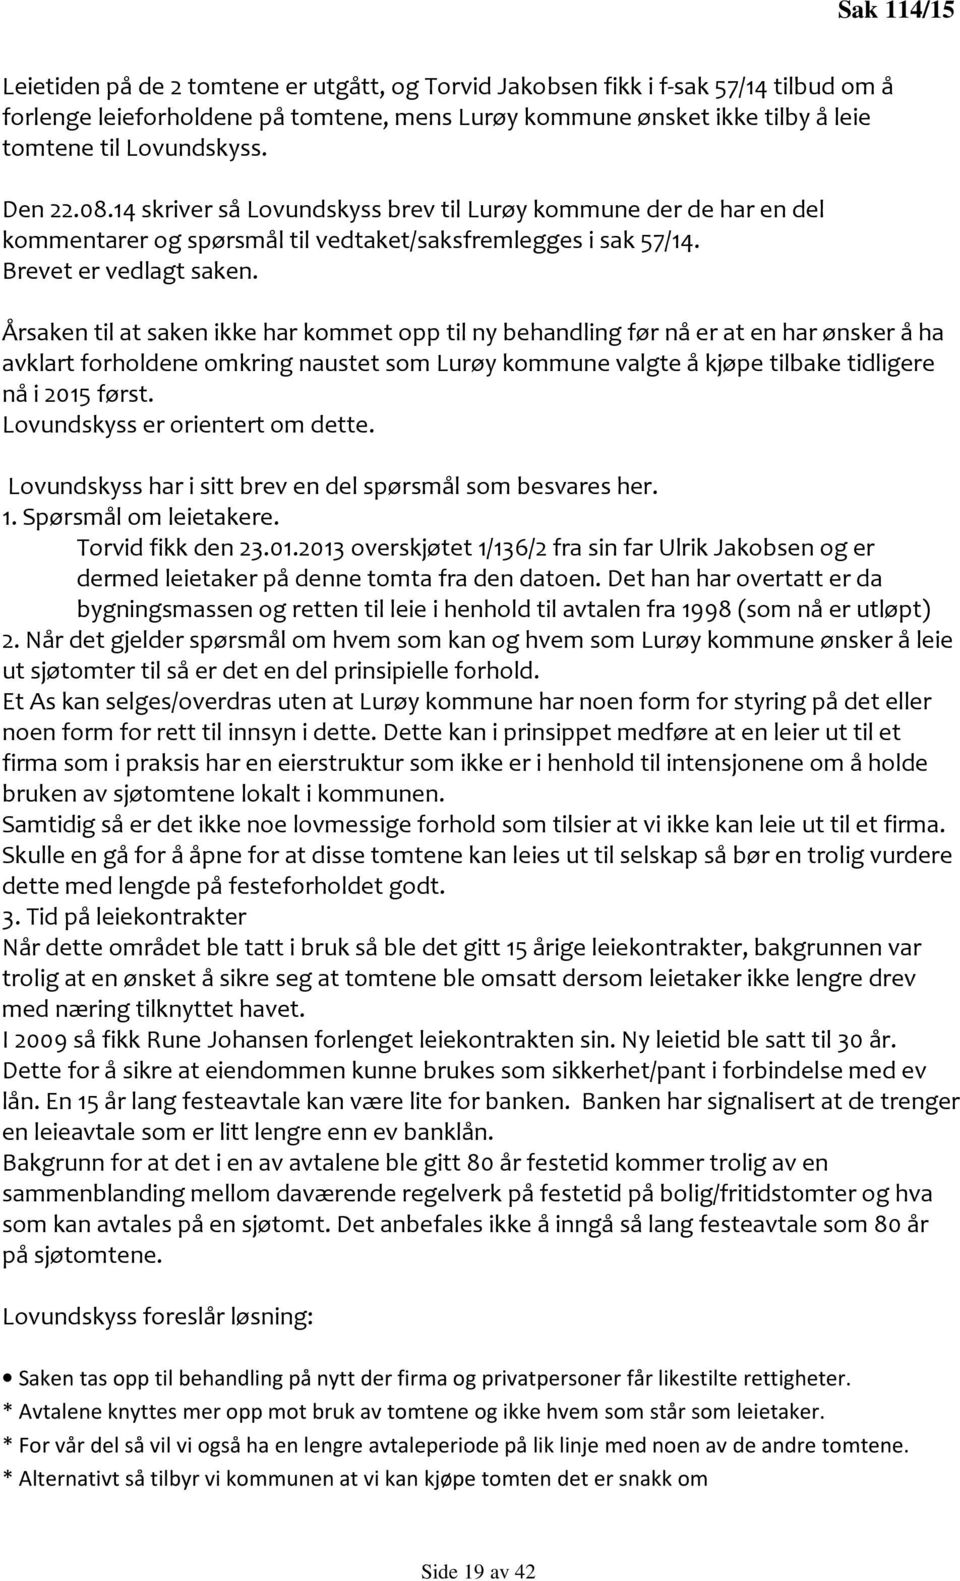 Årsaken til at saken ikke har kommet opp til ny behandling før nå er at en har ønsker å ha avklart forholdene omkring naustet som Lurøy kommune valgte å kjøpe tilbake tidligere nå i 2015 først.